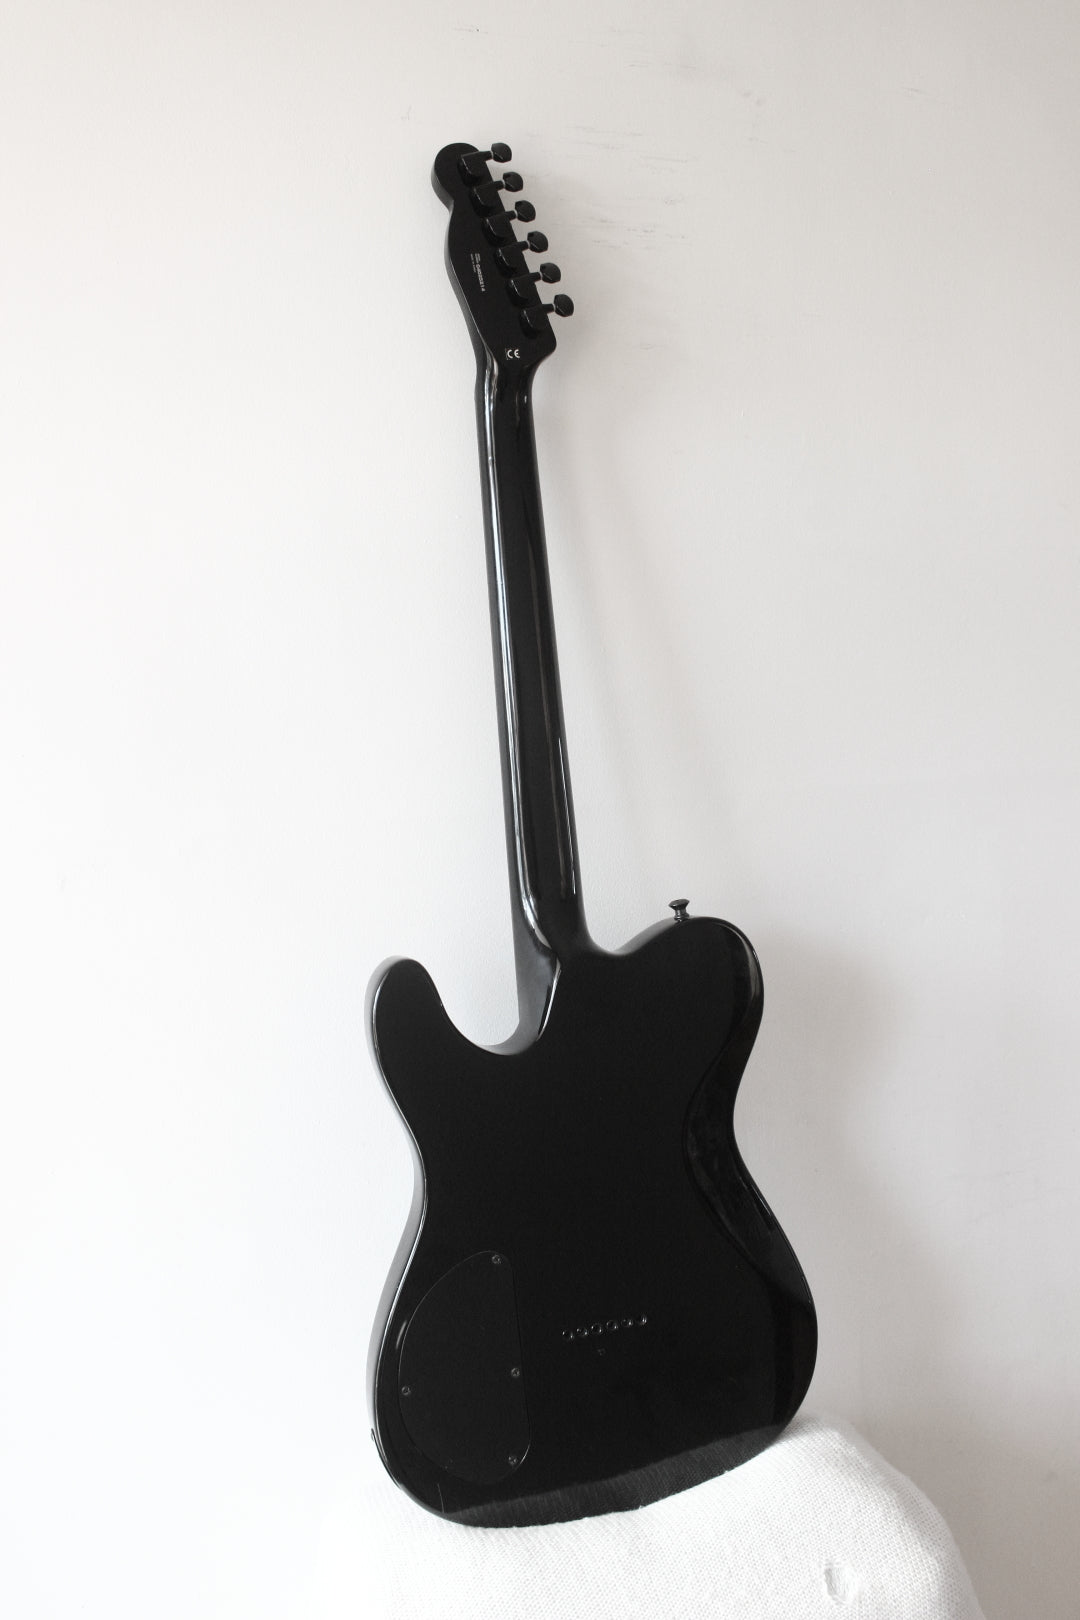 Fender Telecaster Blackout HH Black 2004